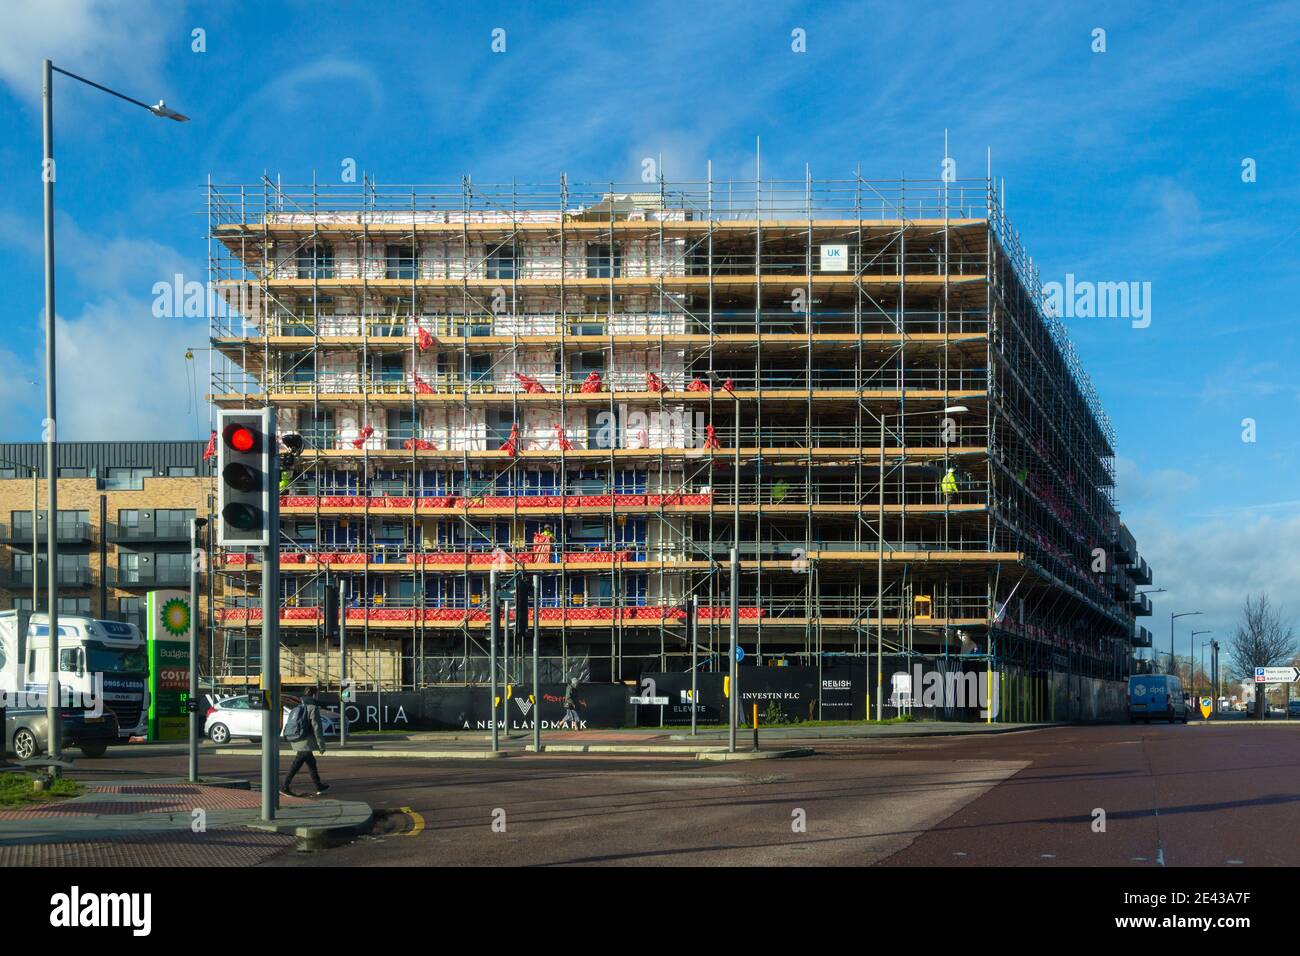 Nuovi lavori di costruzione, riqualificazione urbana, Victoria Point, Ashford, Kent, regno unito Foto Stock